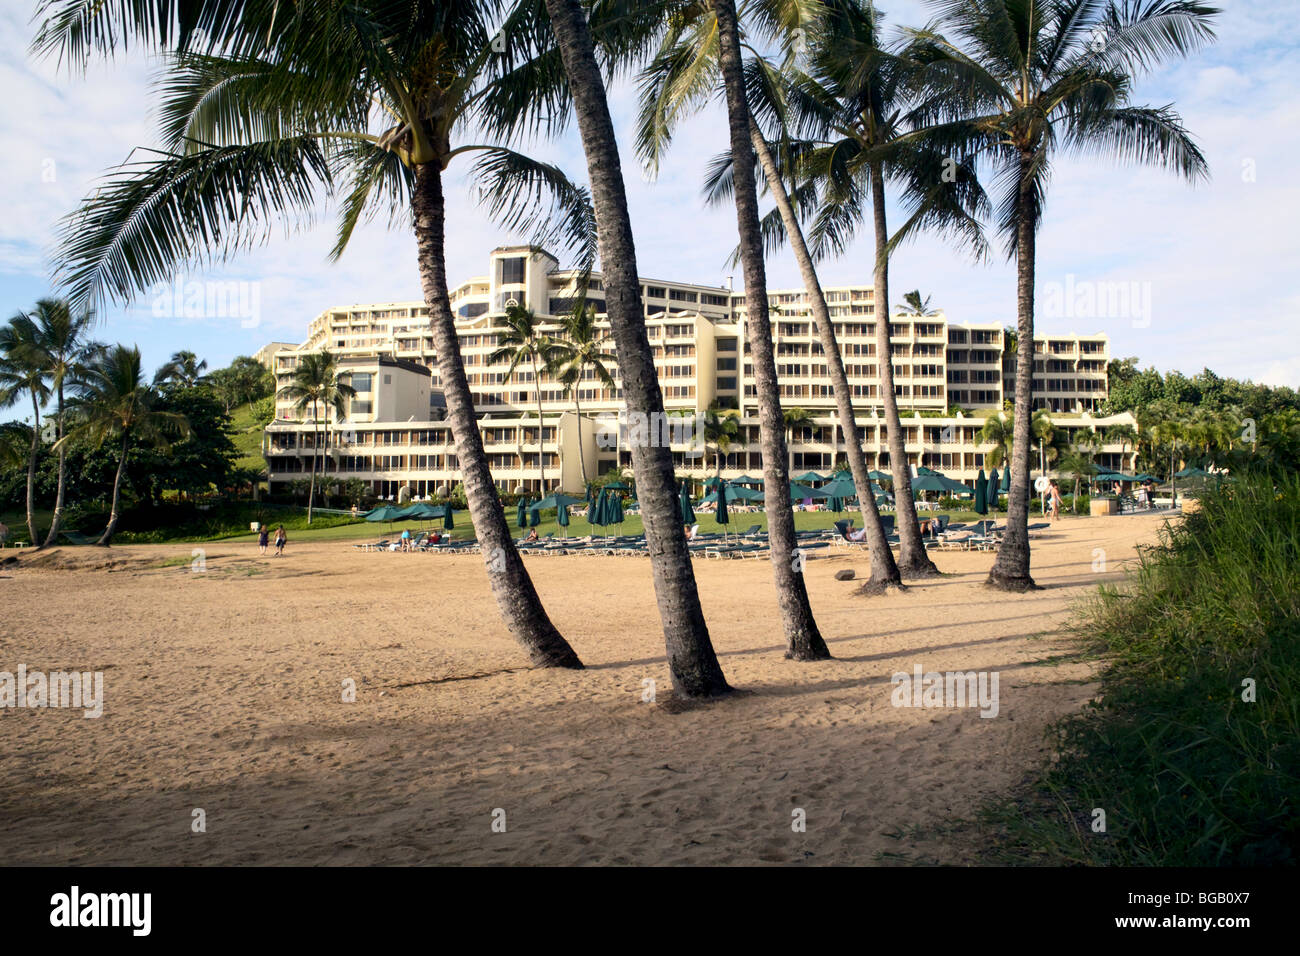 Princeville Hotel at Puu Poa Beach Kauai HI Stock Photo